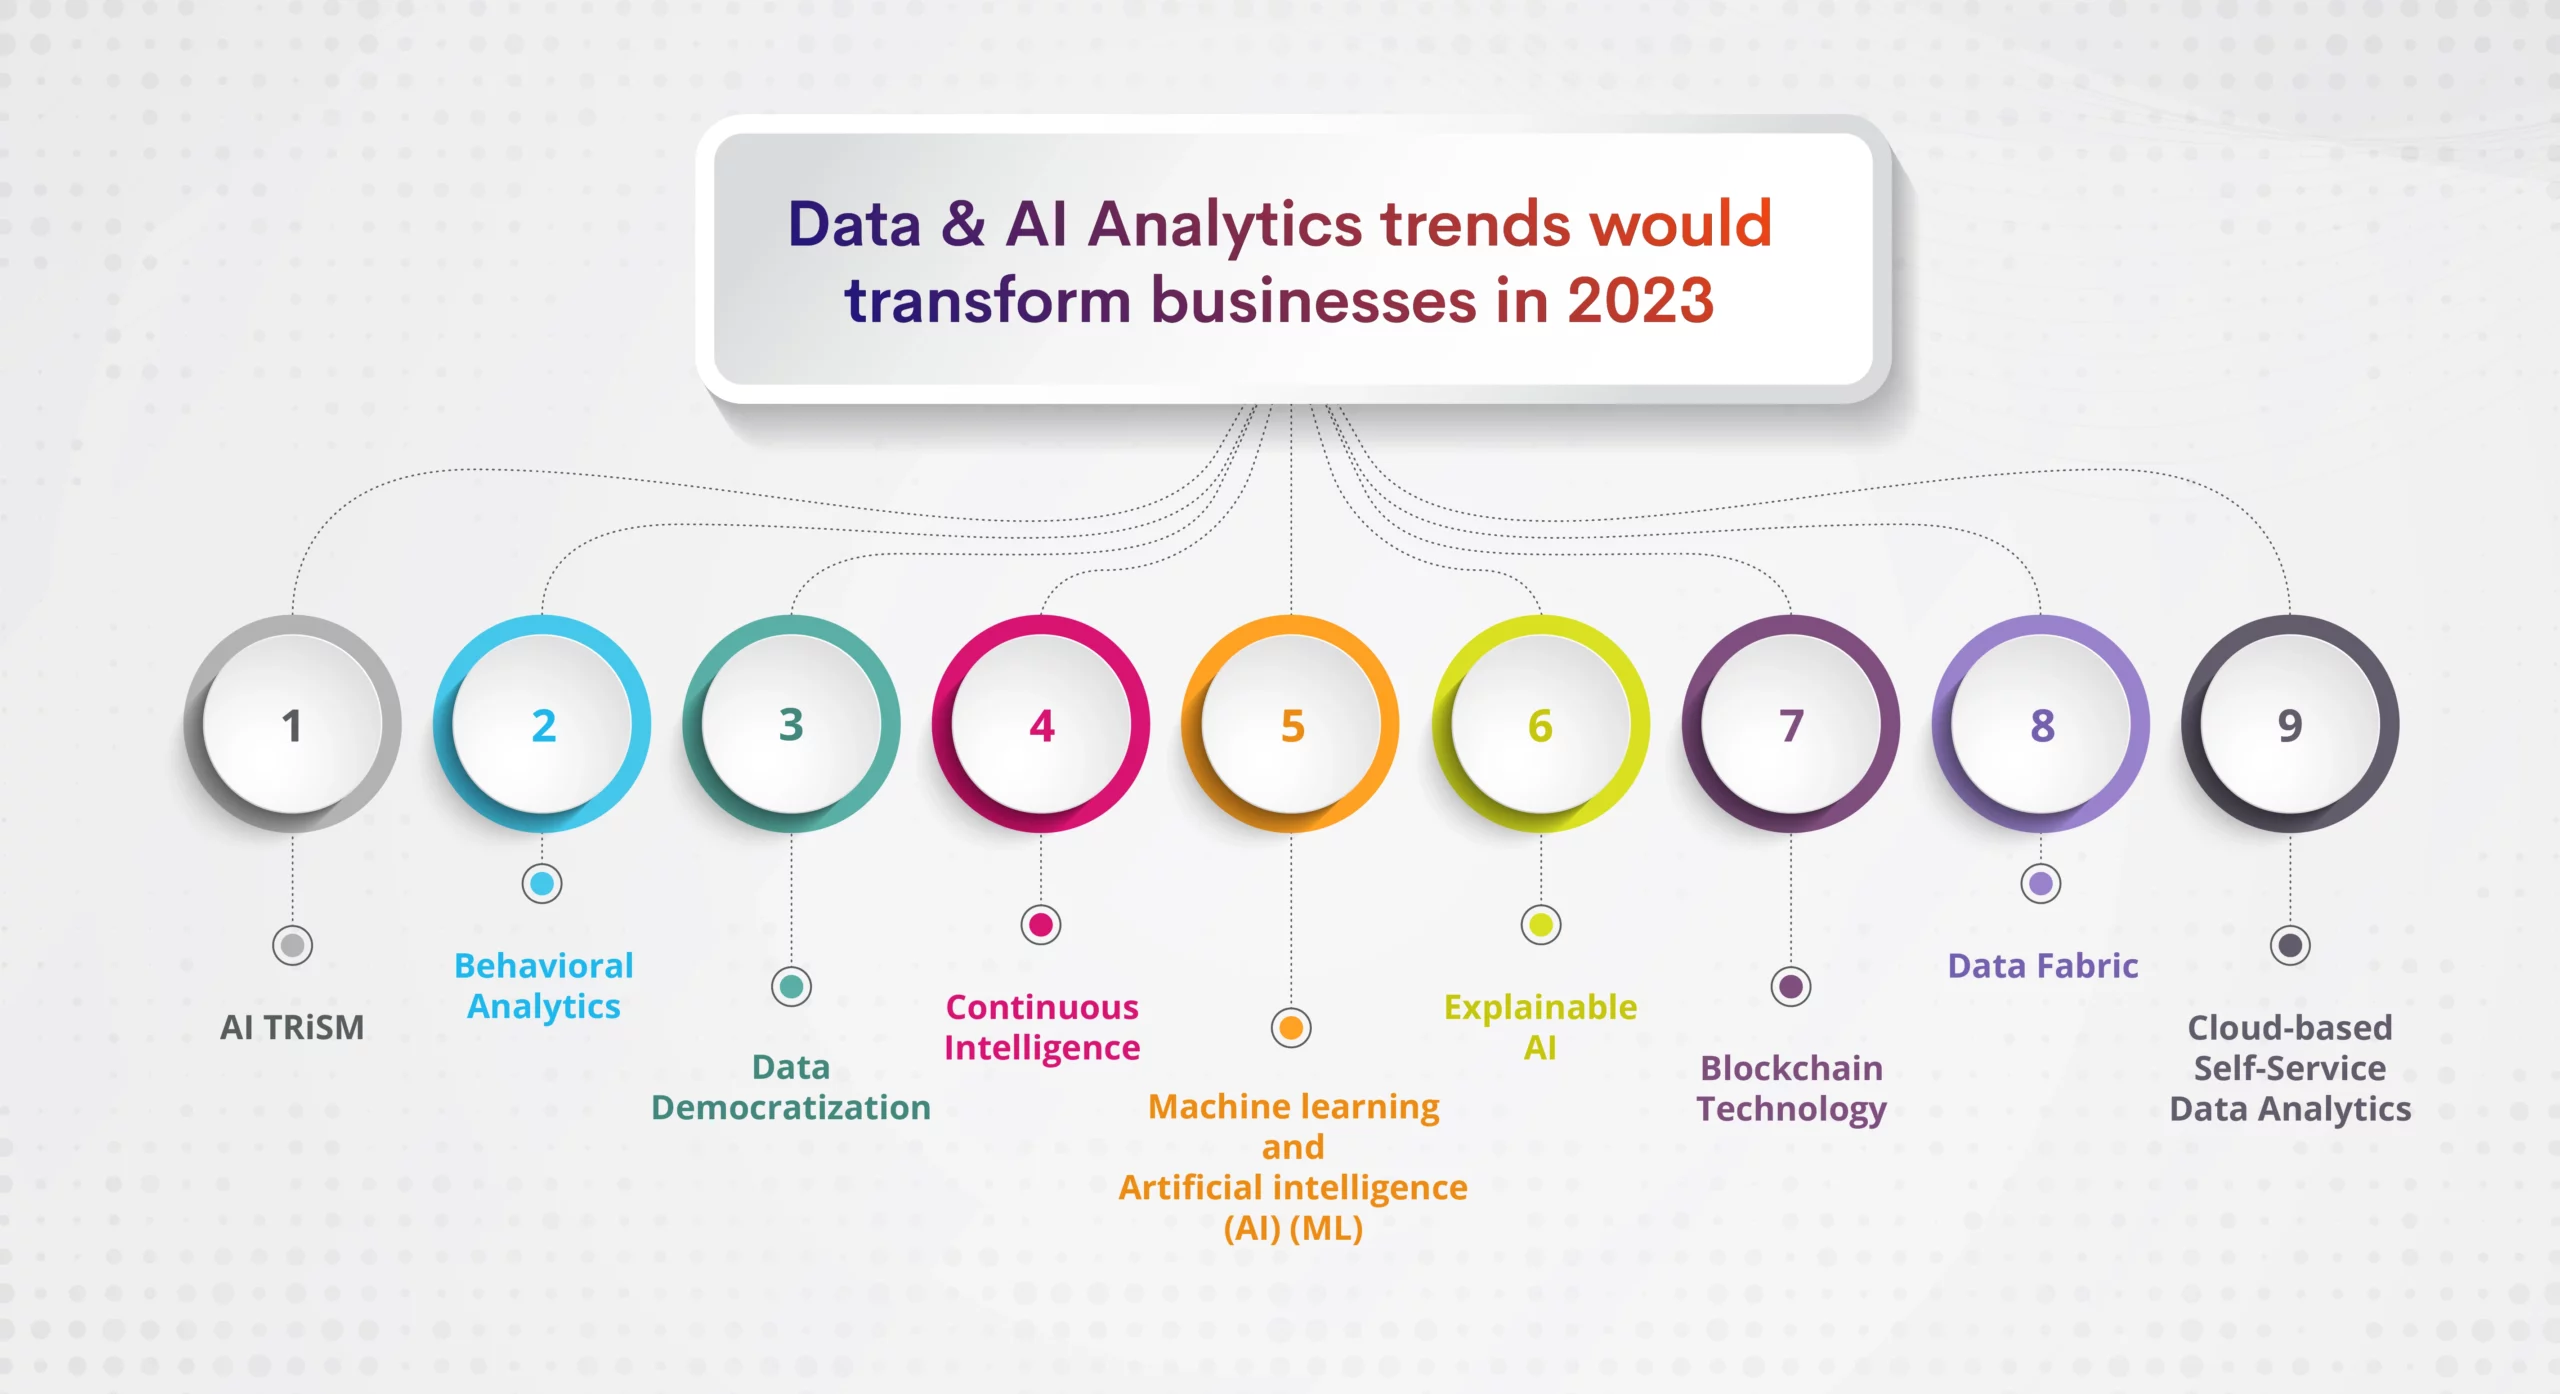 Data & AI Analytics trends 2023